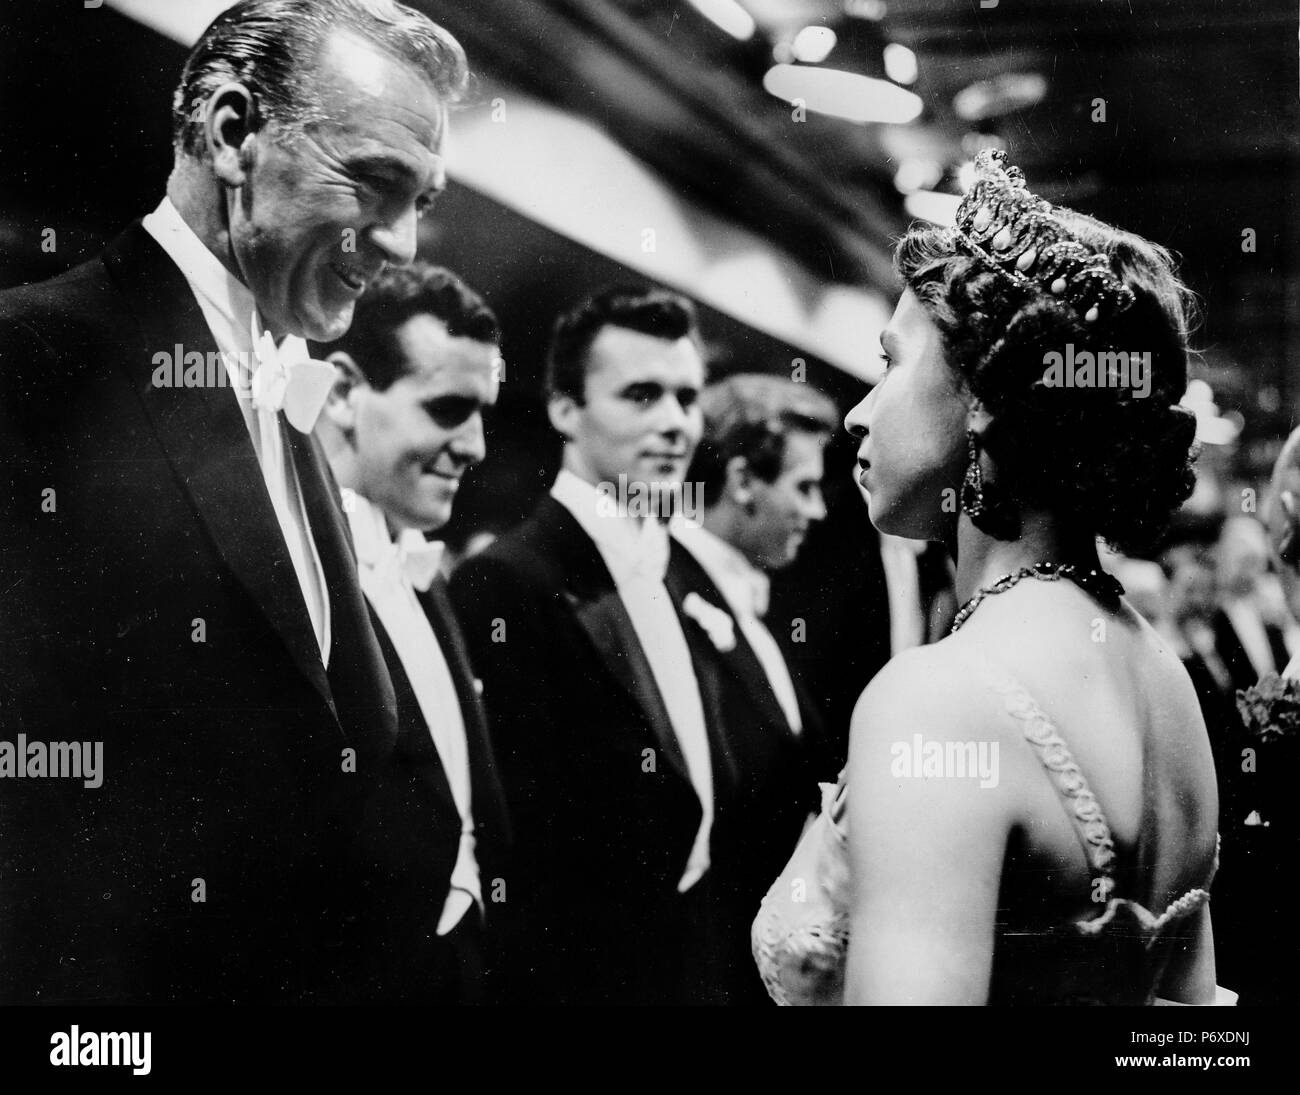 gary cooper, george cole, dirk bogarde meet queen elisabetta II, odeon theater, london, 1953 Stock Photo